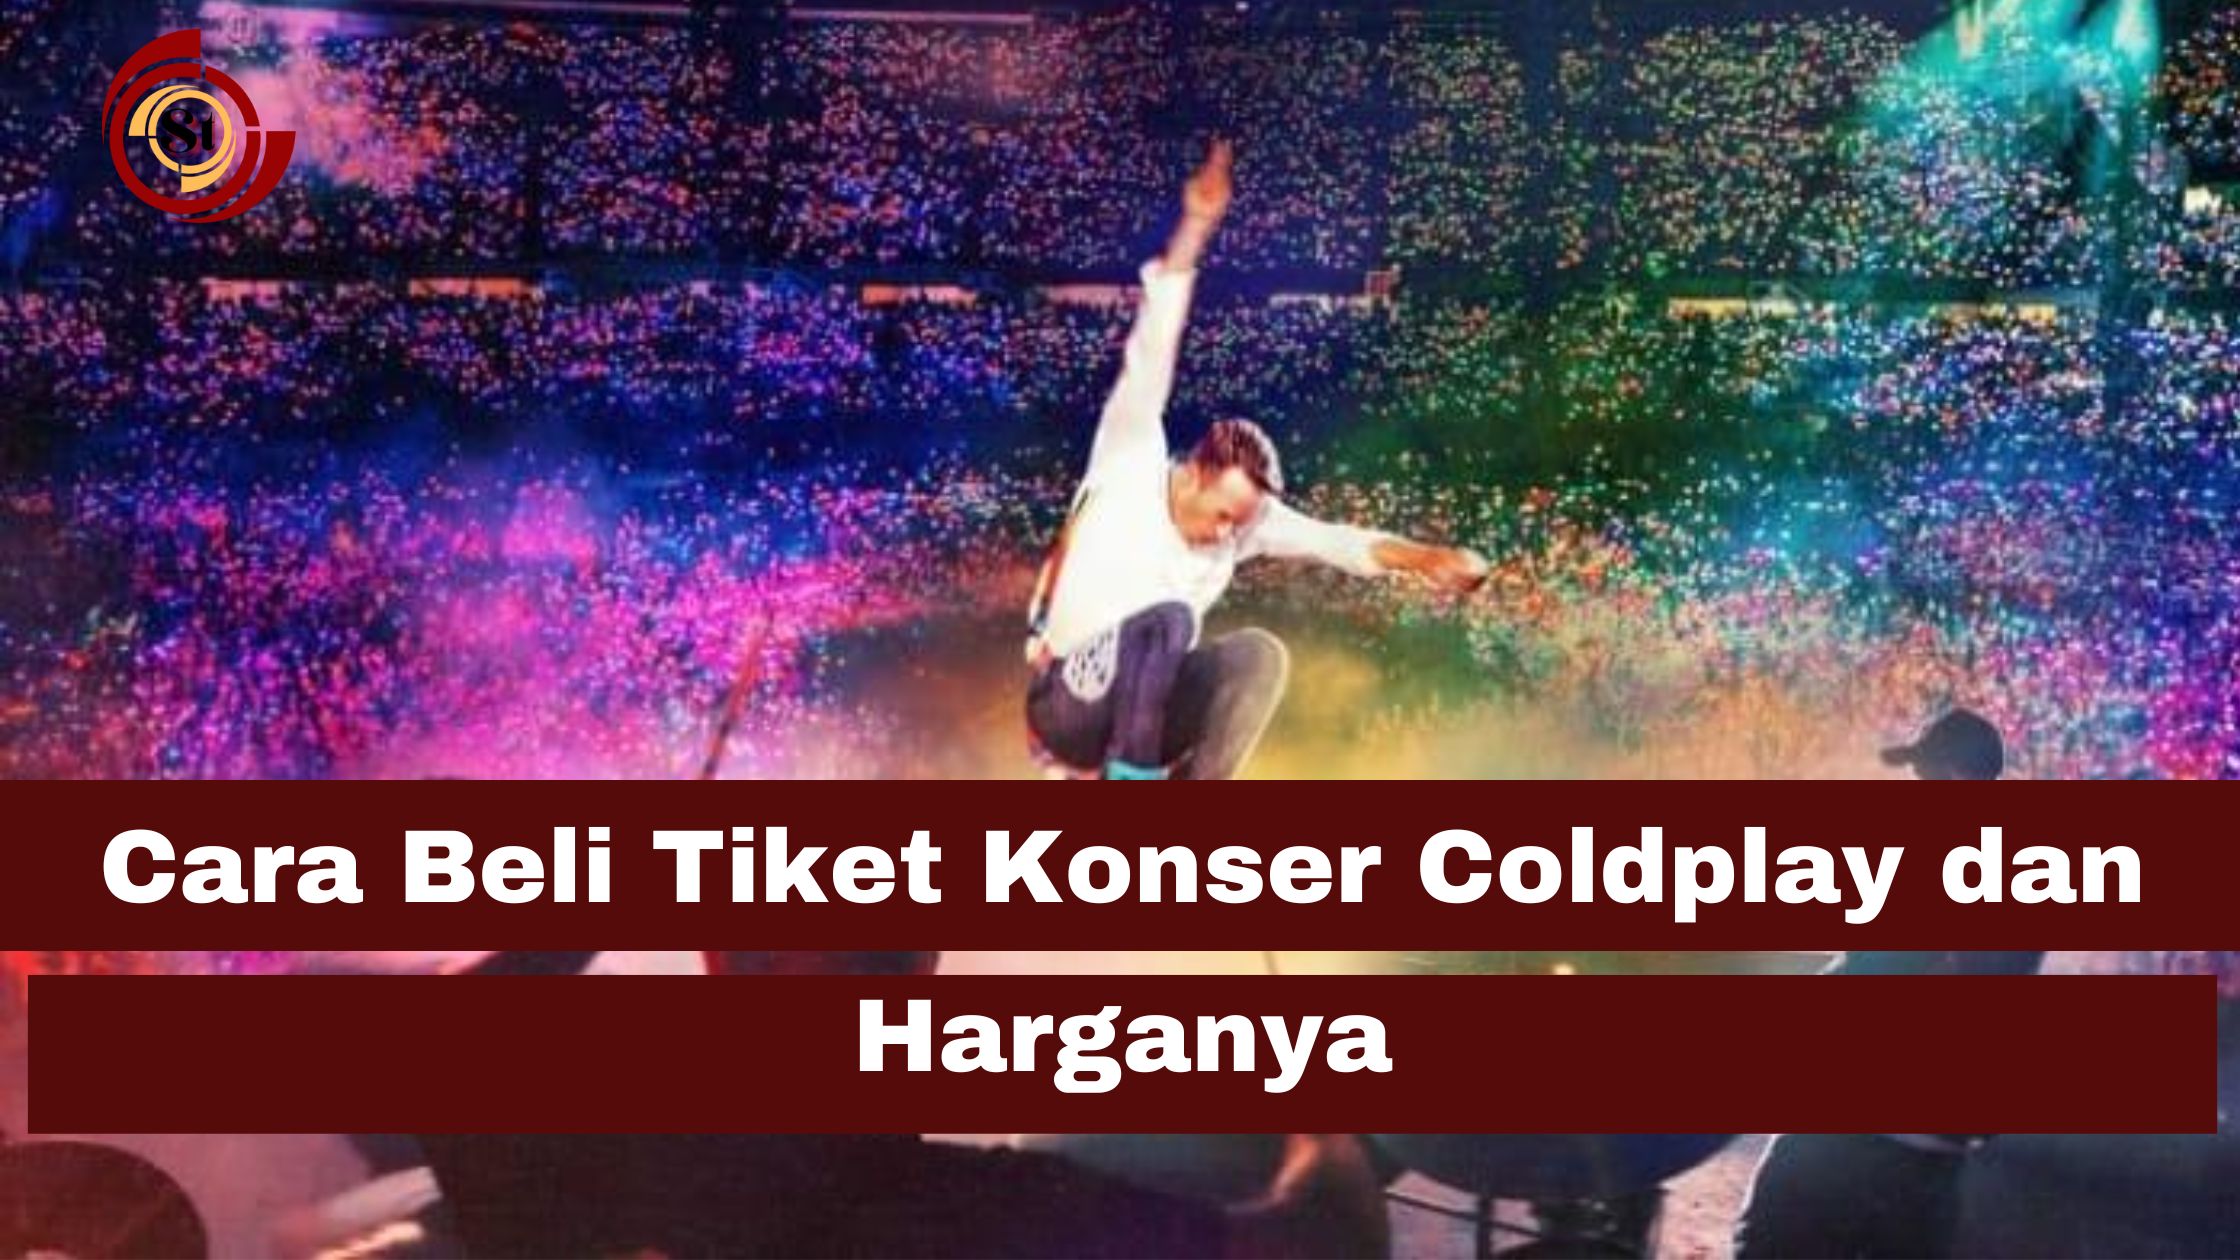 Cara Beli Tiket Konser Coldplay dan Harganya